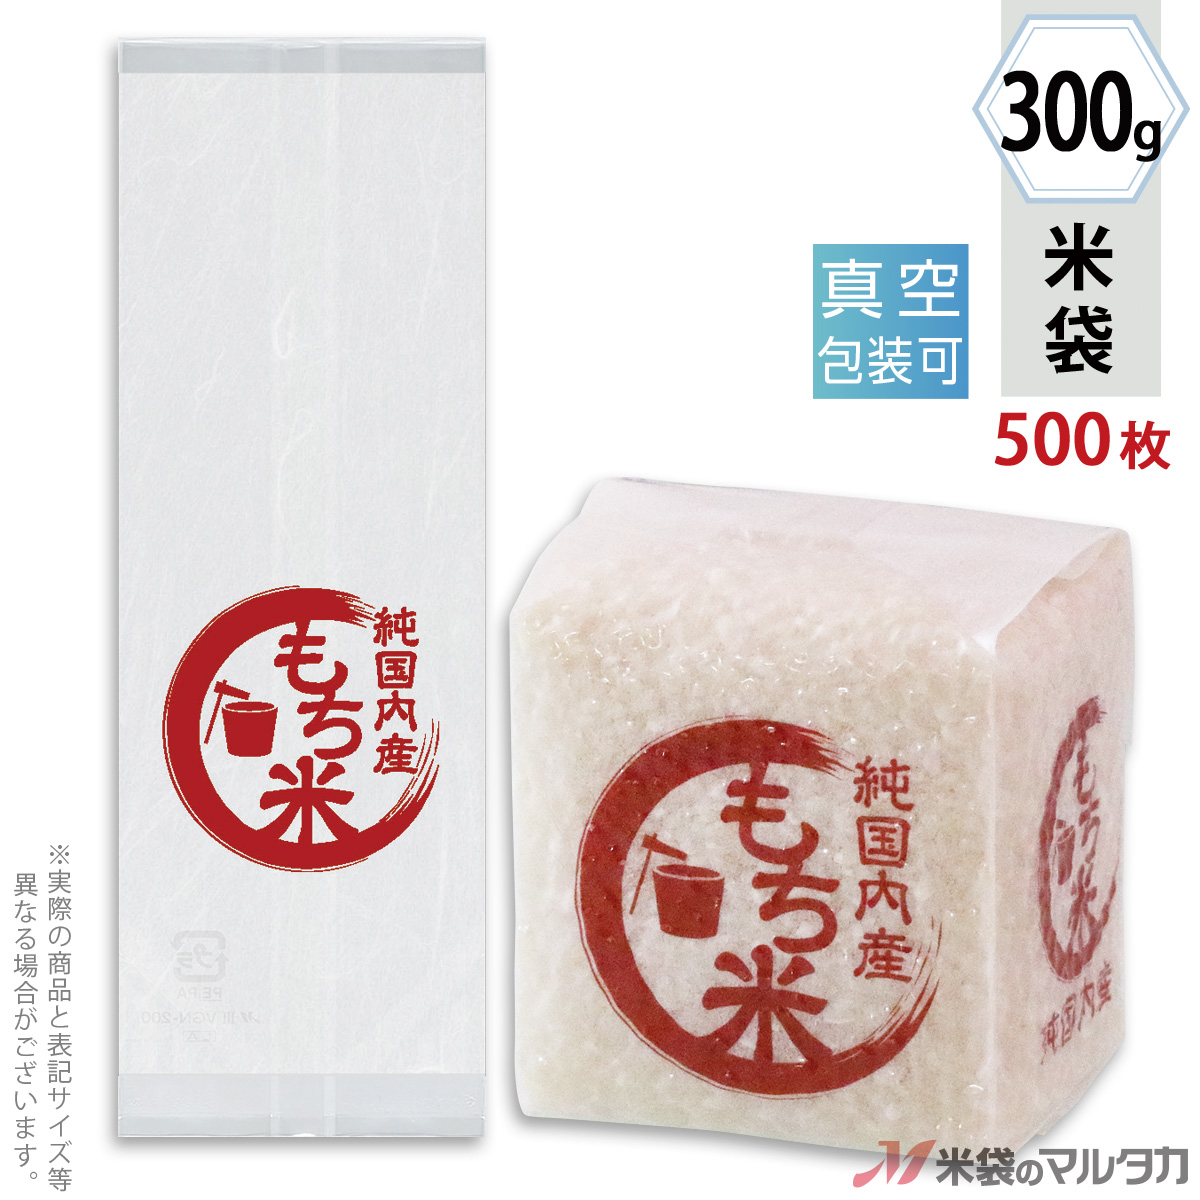 ポリカーボネイト製キッチンポット 桜井 ハイトレス75 A3カット7ST03 1冊(500枚)